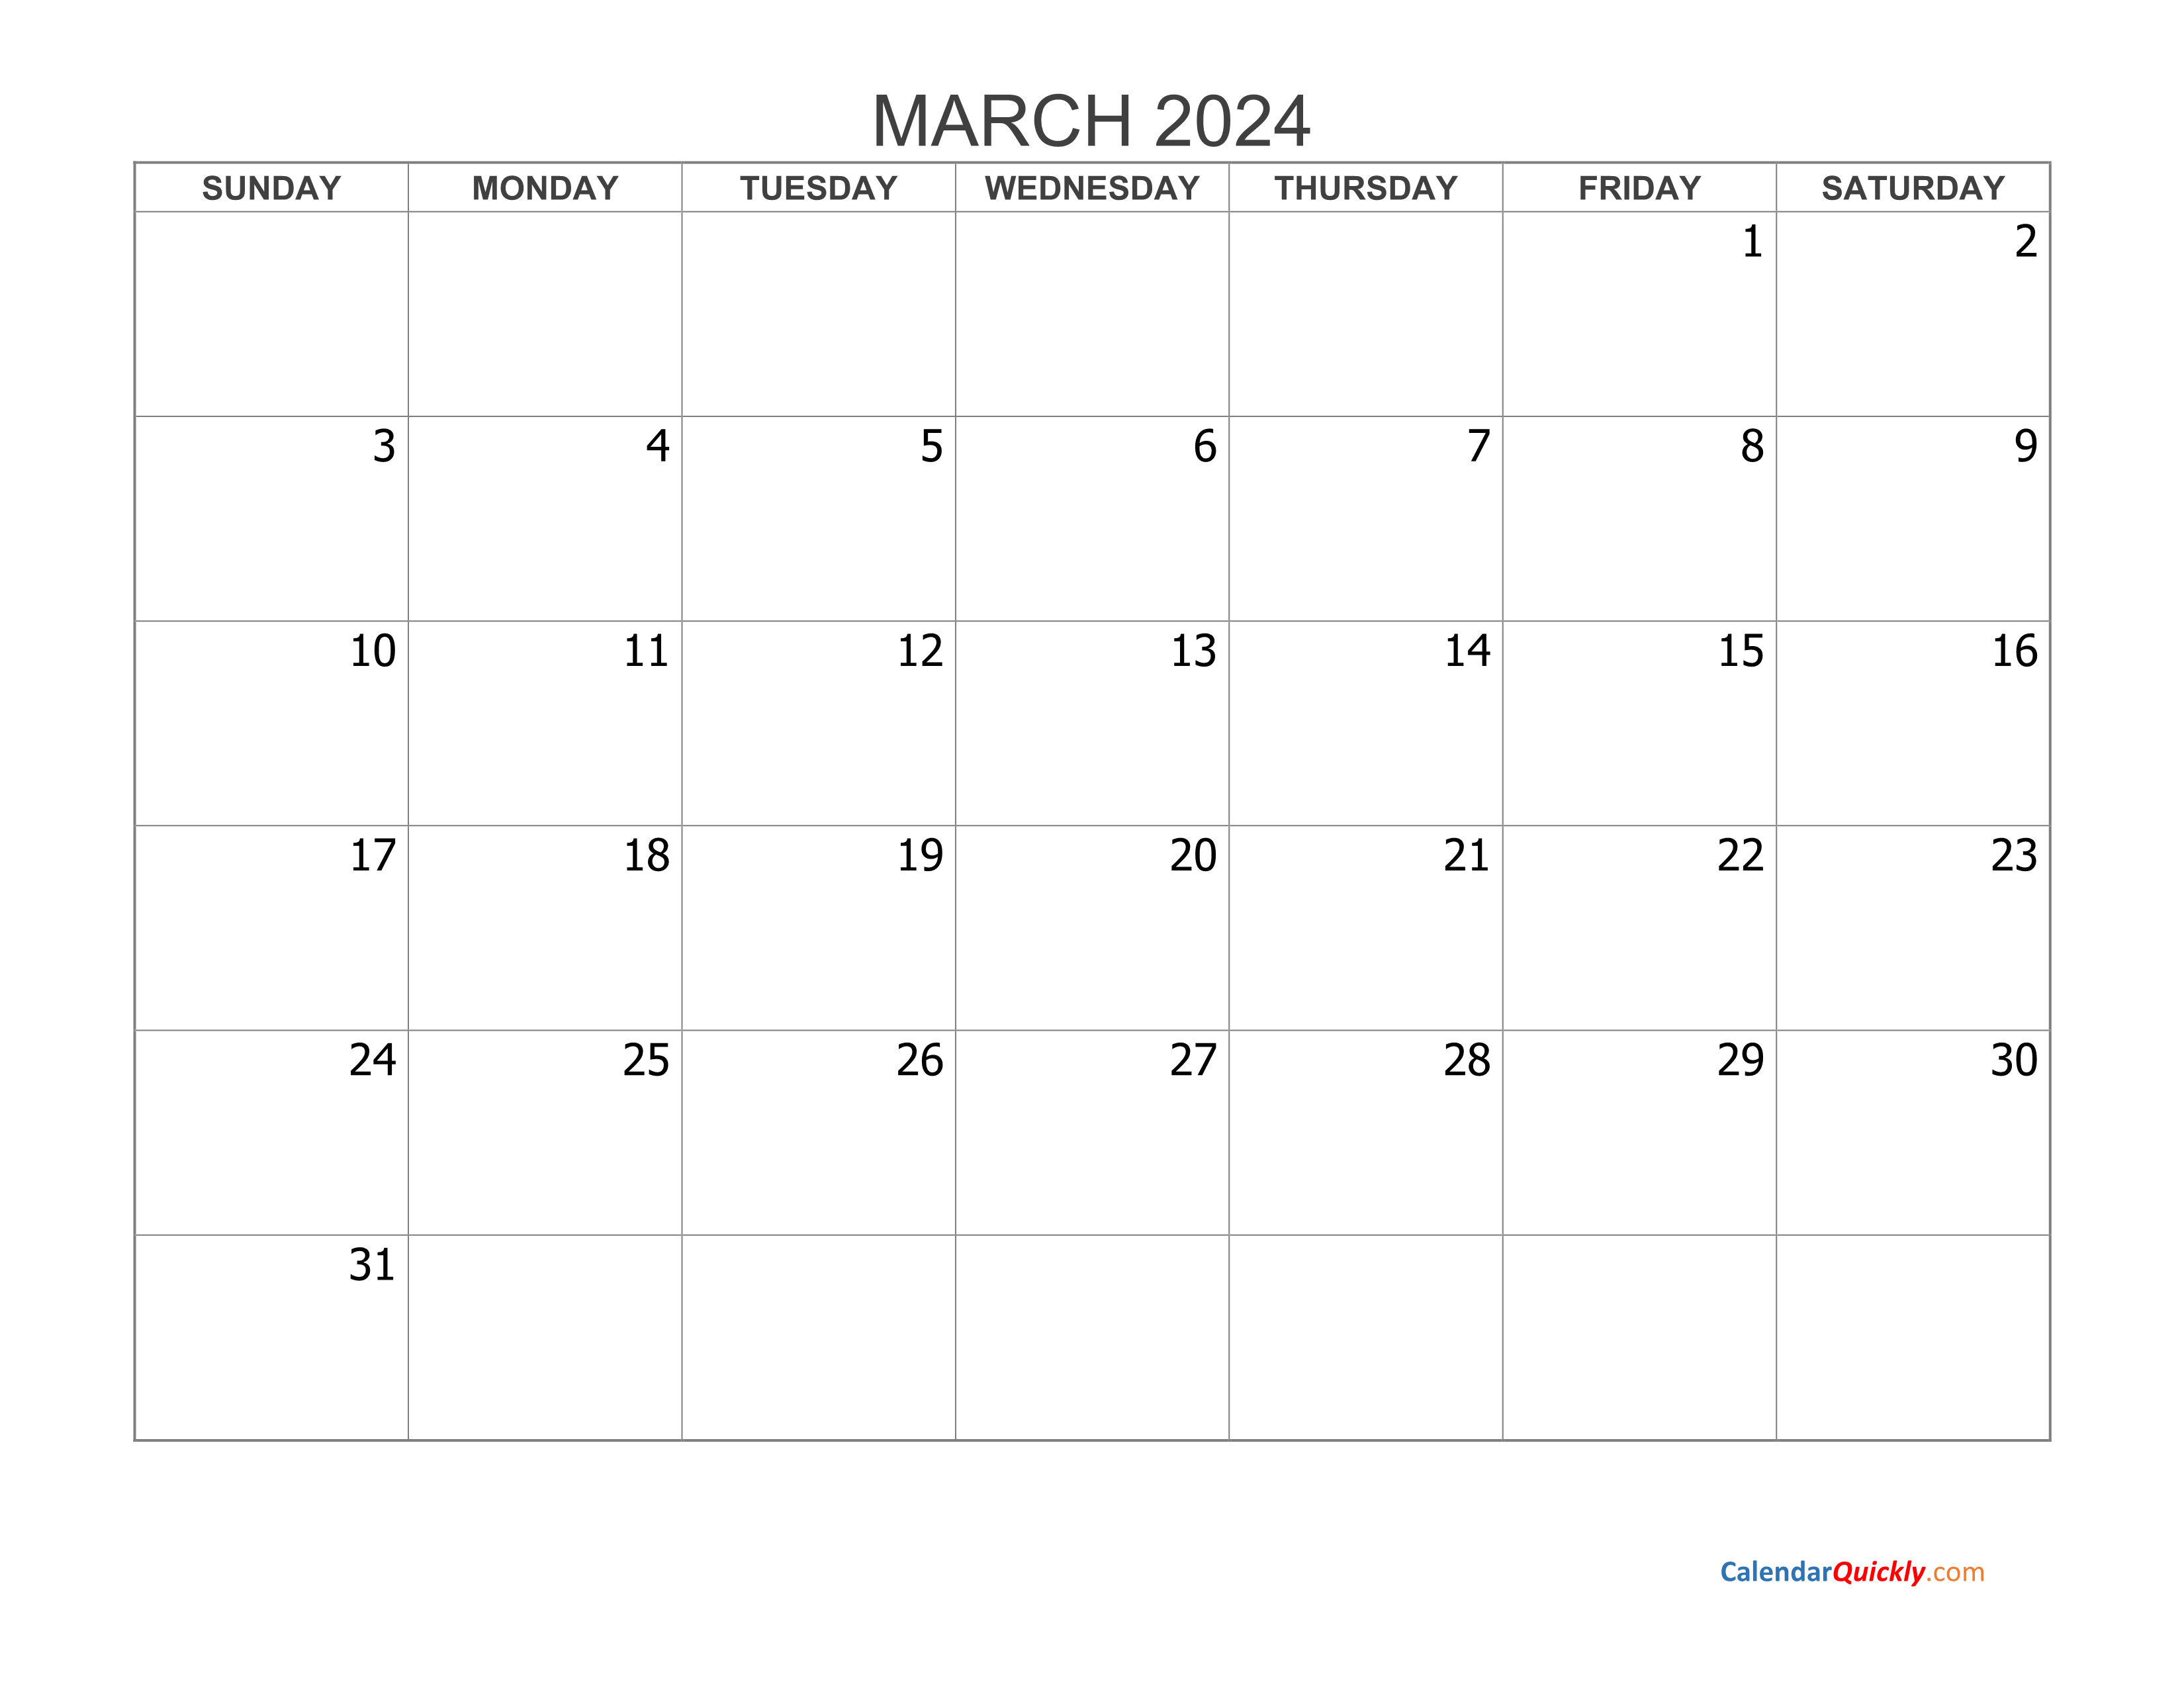 March 2024 Blank Calendar Calendar Quickly - Free Printable 2024 March Calendar